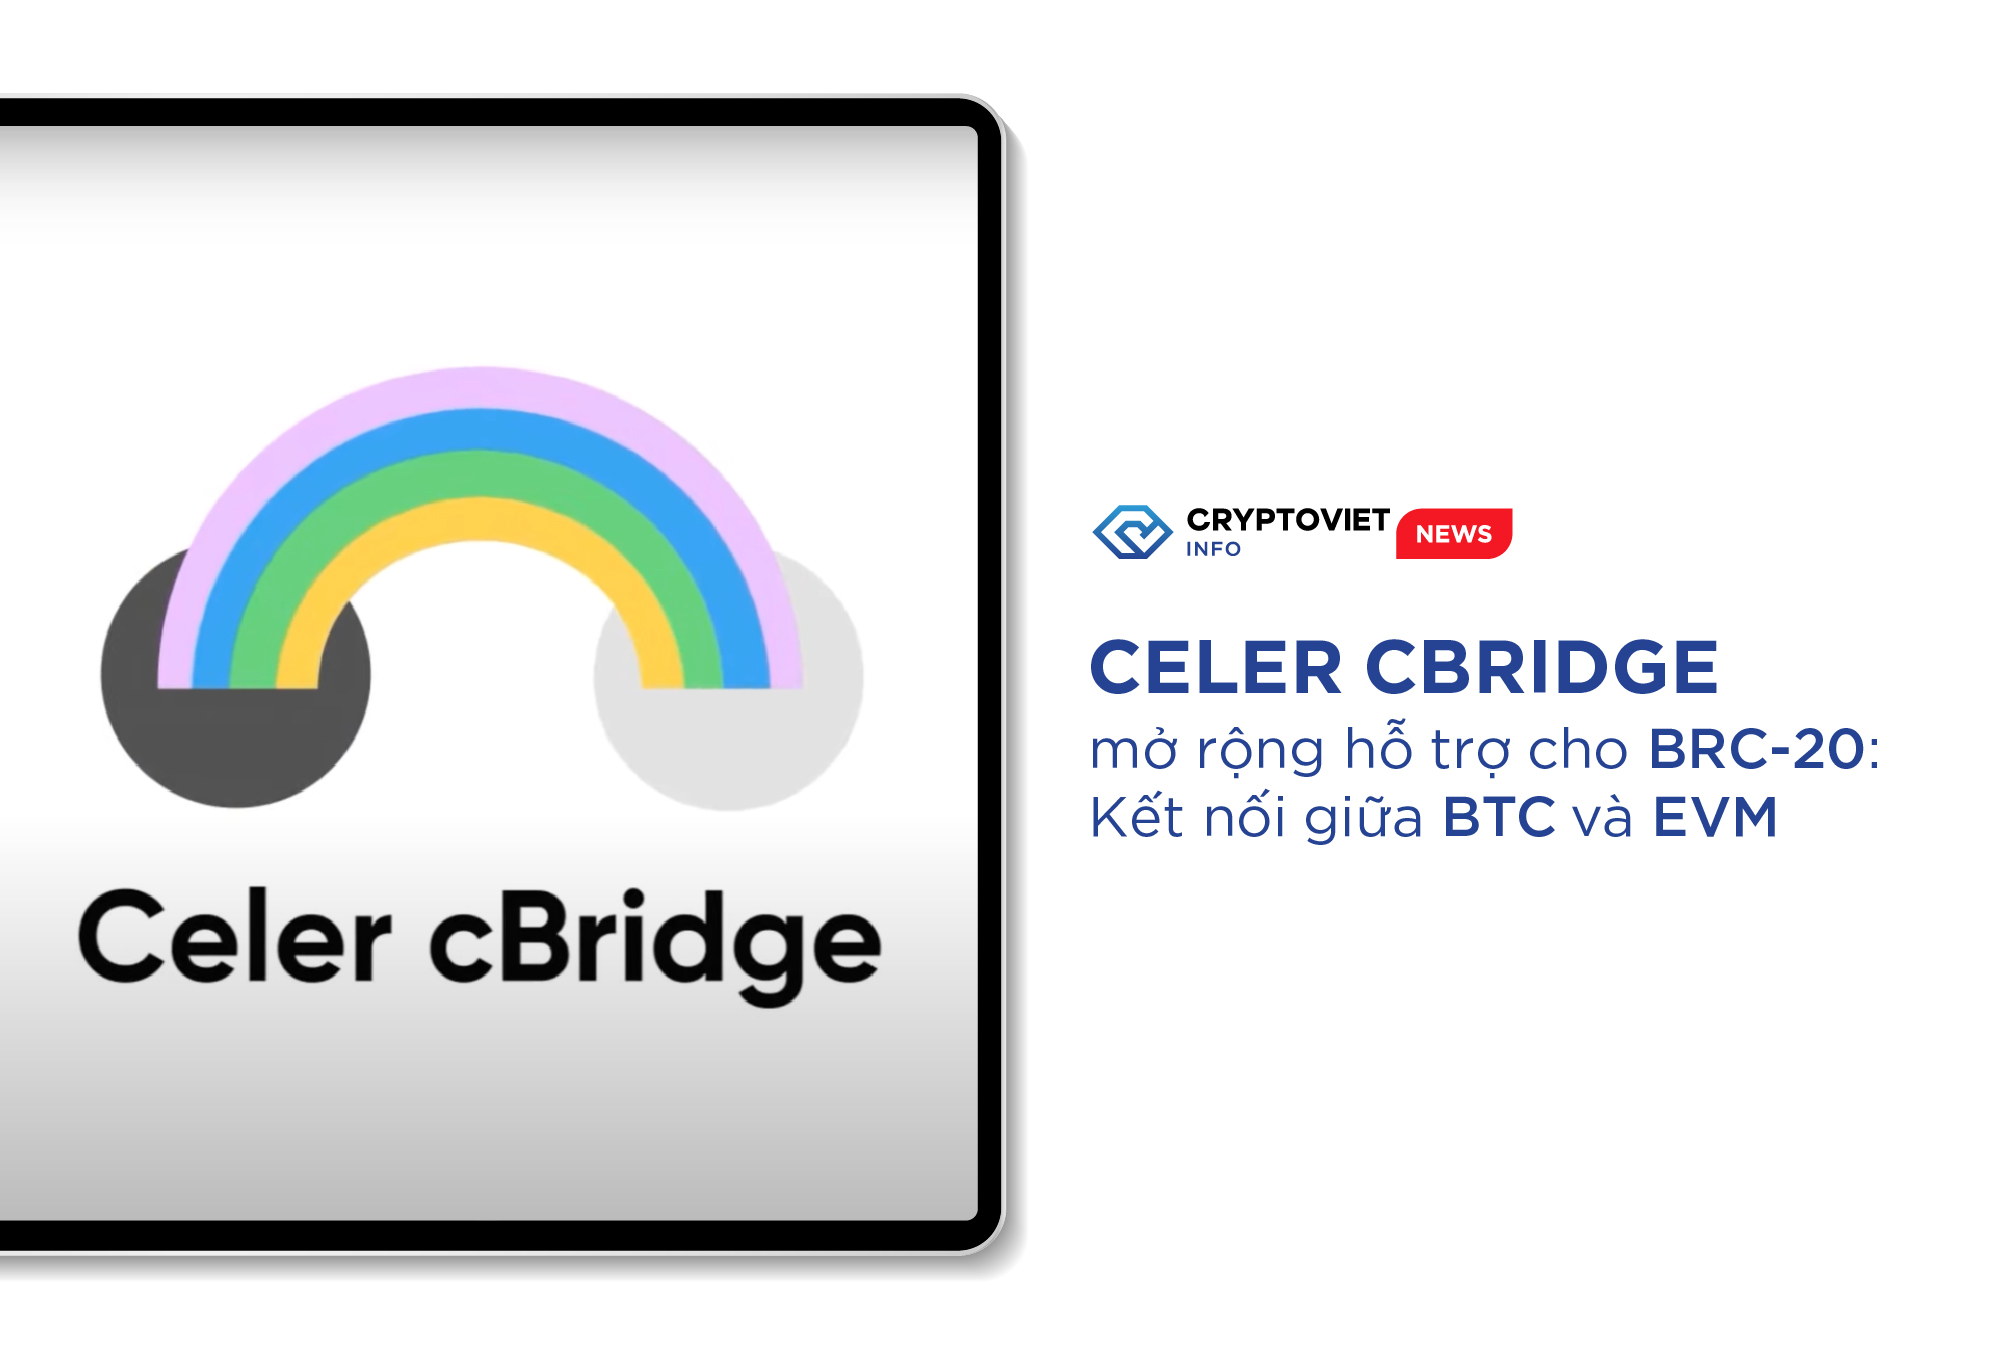 Celer cBridge mở rộng hỗ trợ cho BRC-20: Kết nối giữa BTC và EVM